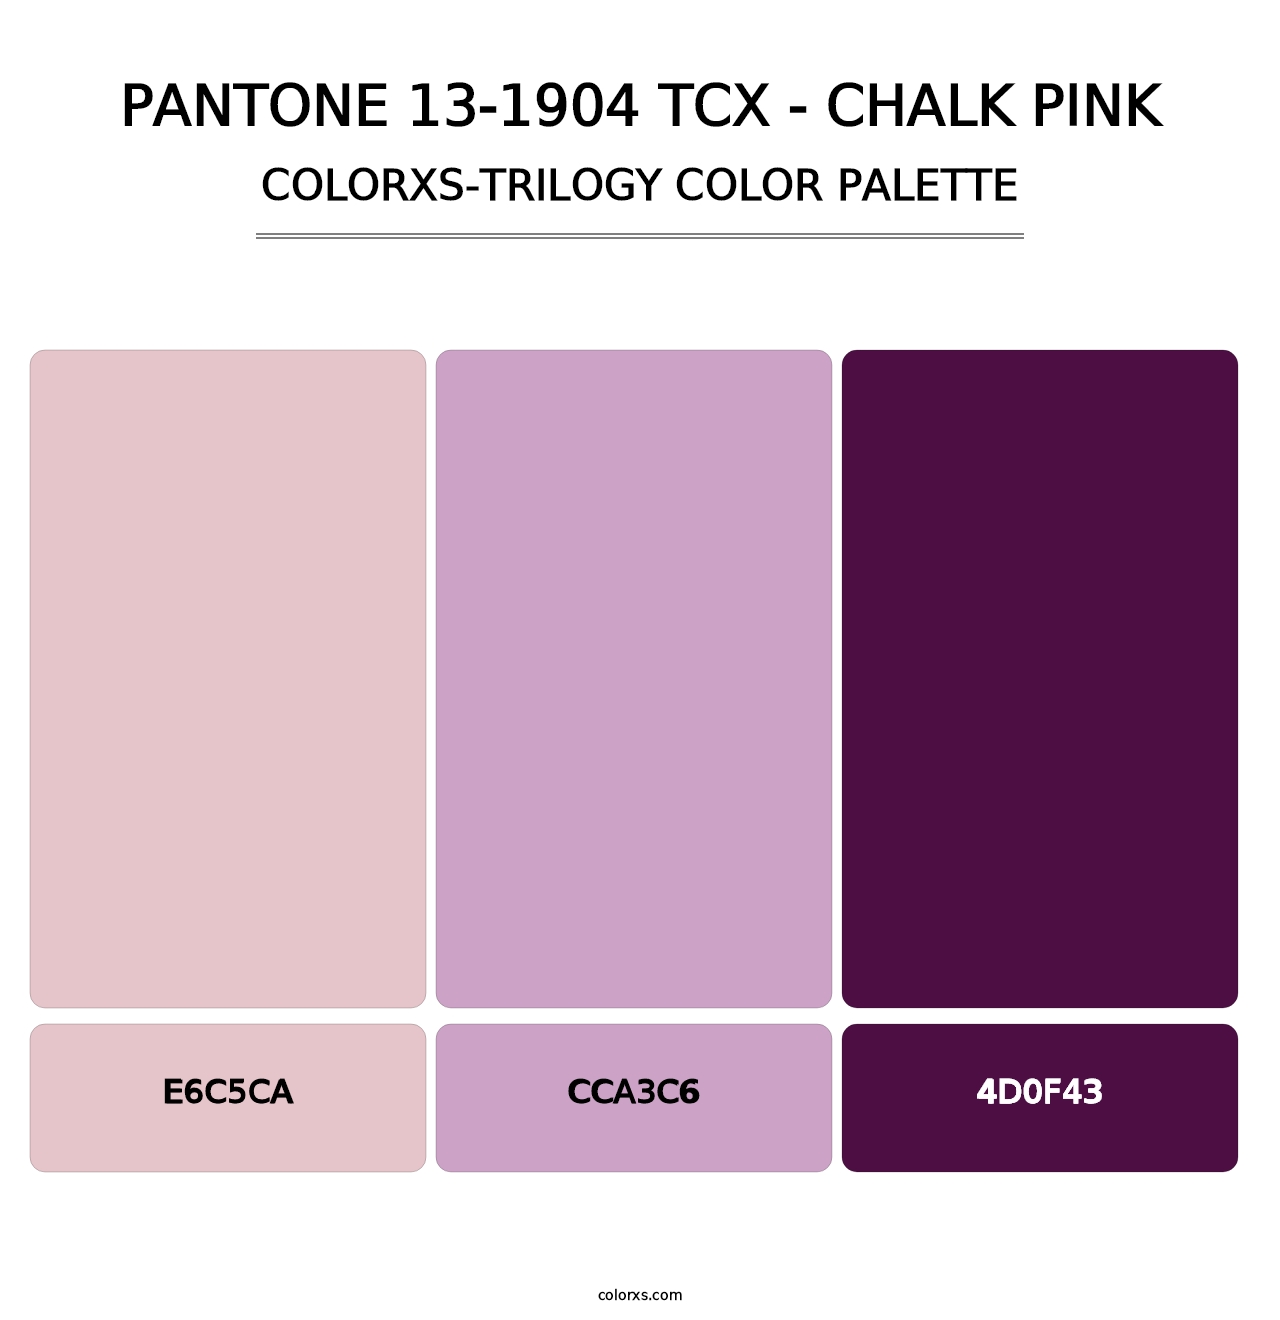 PANTONE 13-1904 TCX - Chalk Pink - Colorxs Trilogy Palette